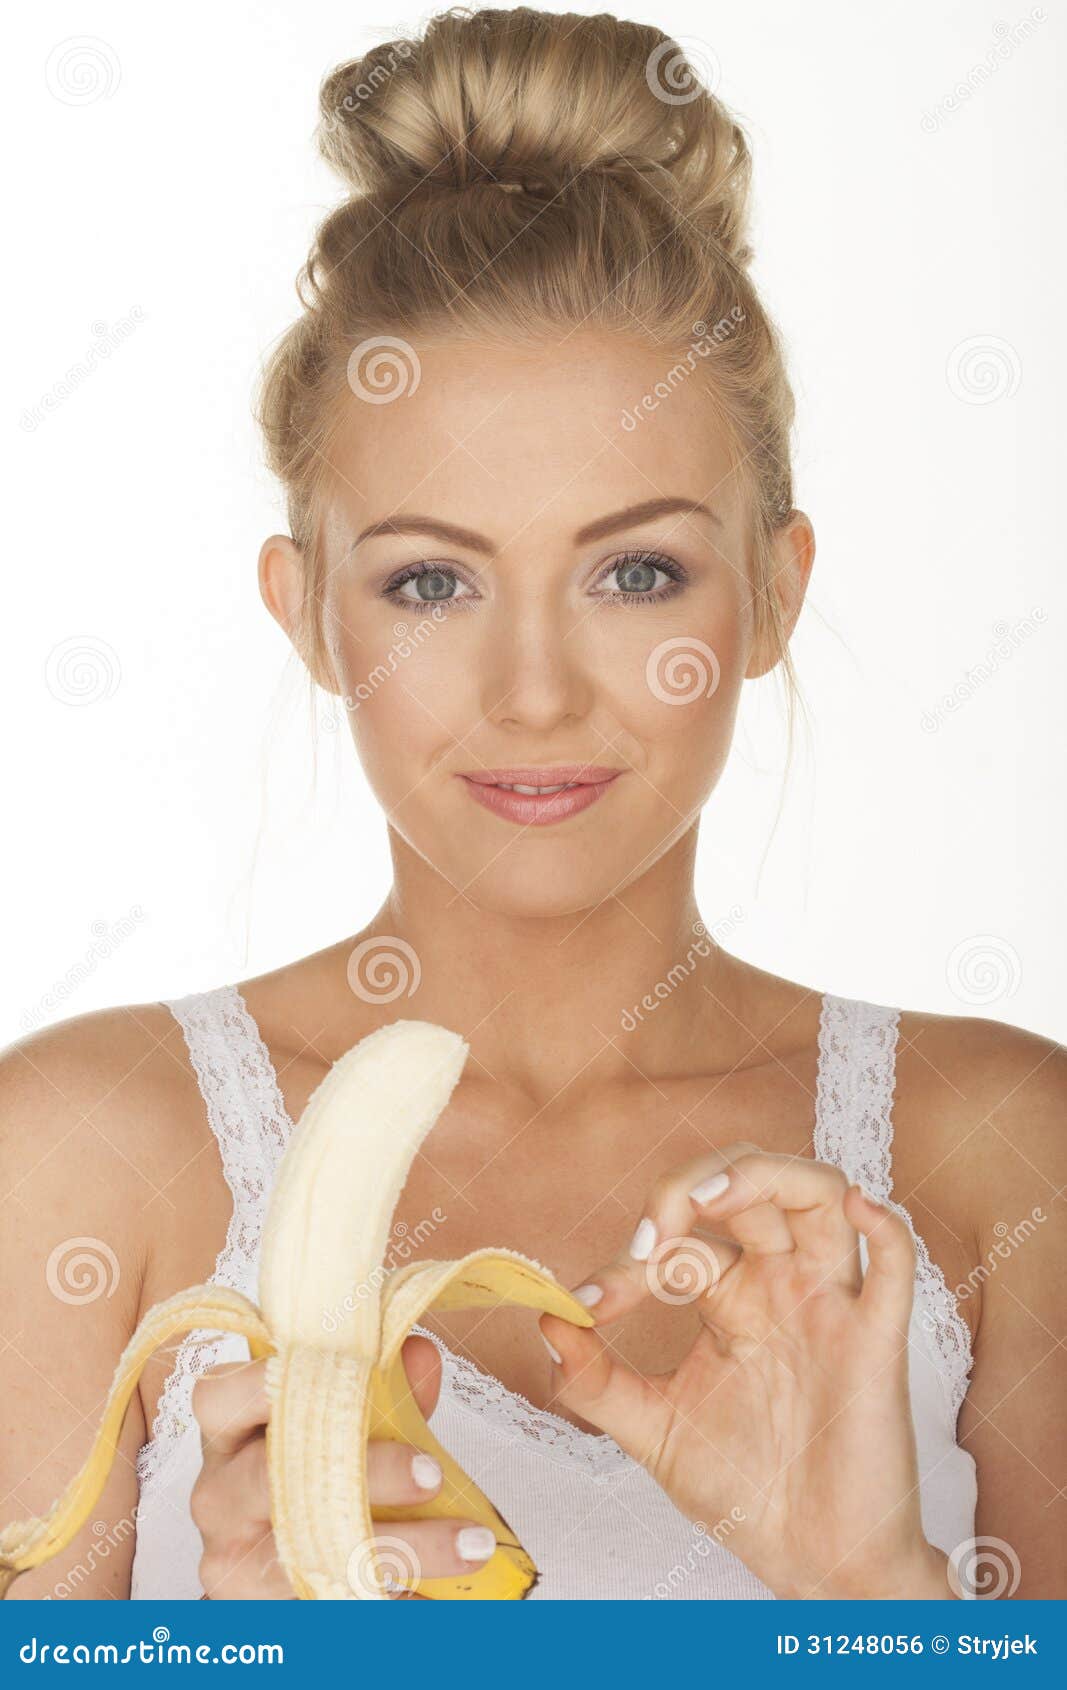 吃女孩年轻人的香蕉 库存照片. 图片 包括有 女孩, 愉快, 查出, 孩子, 颜色, 节食, 营养素, 白种人 - 13770564